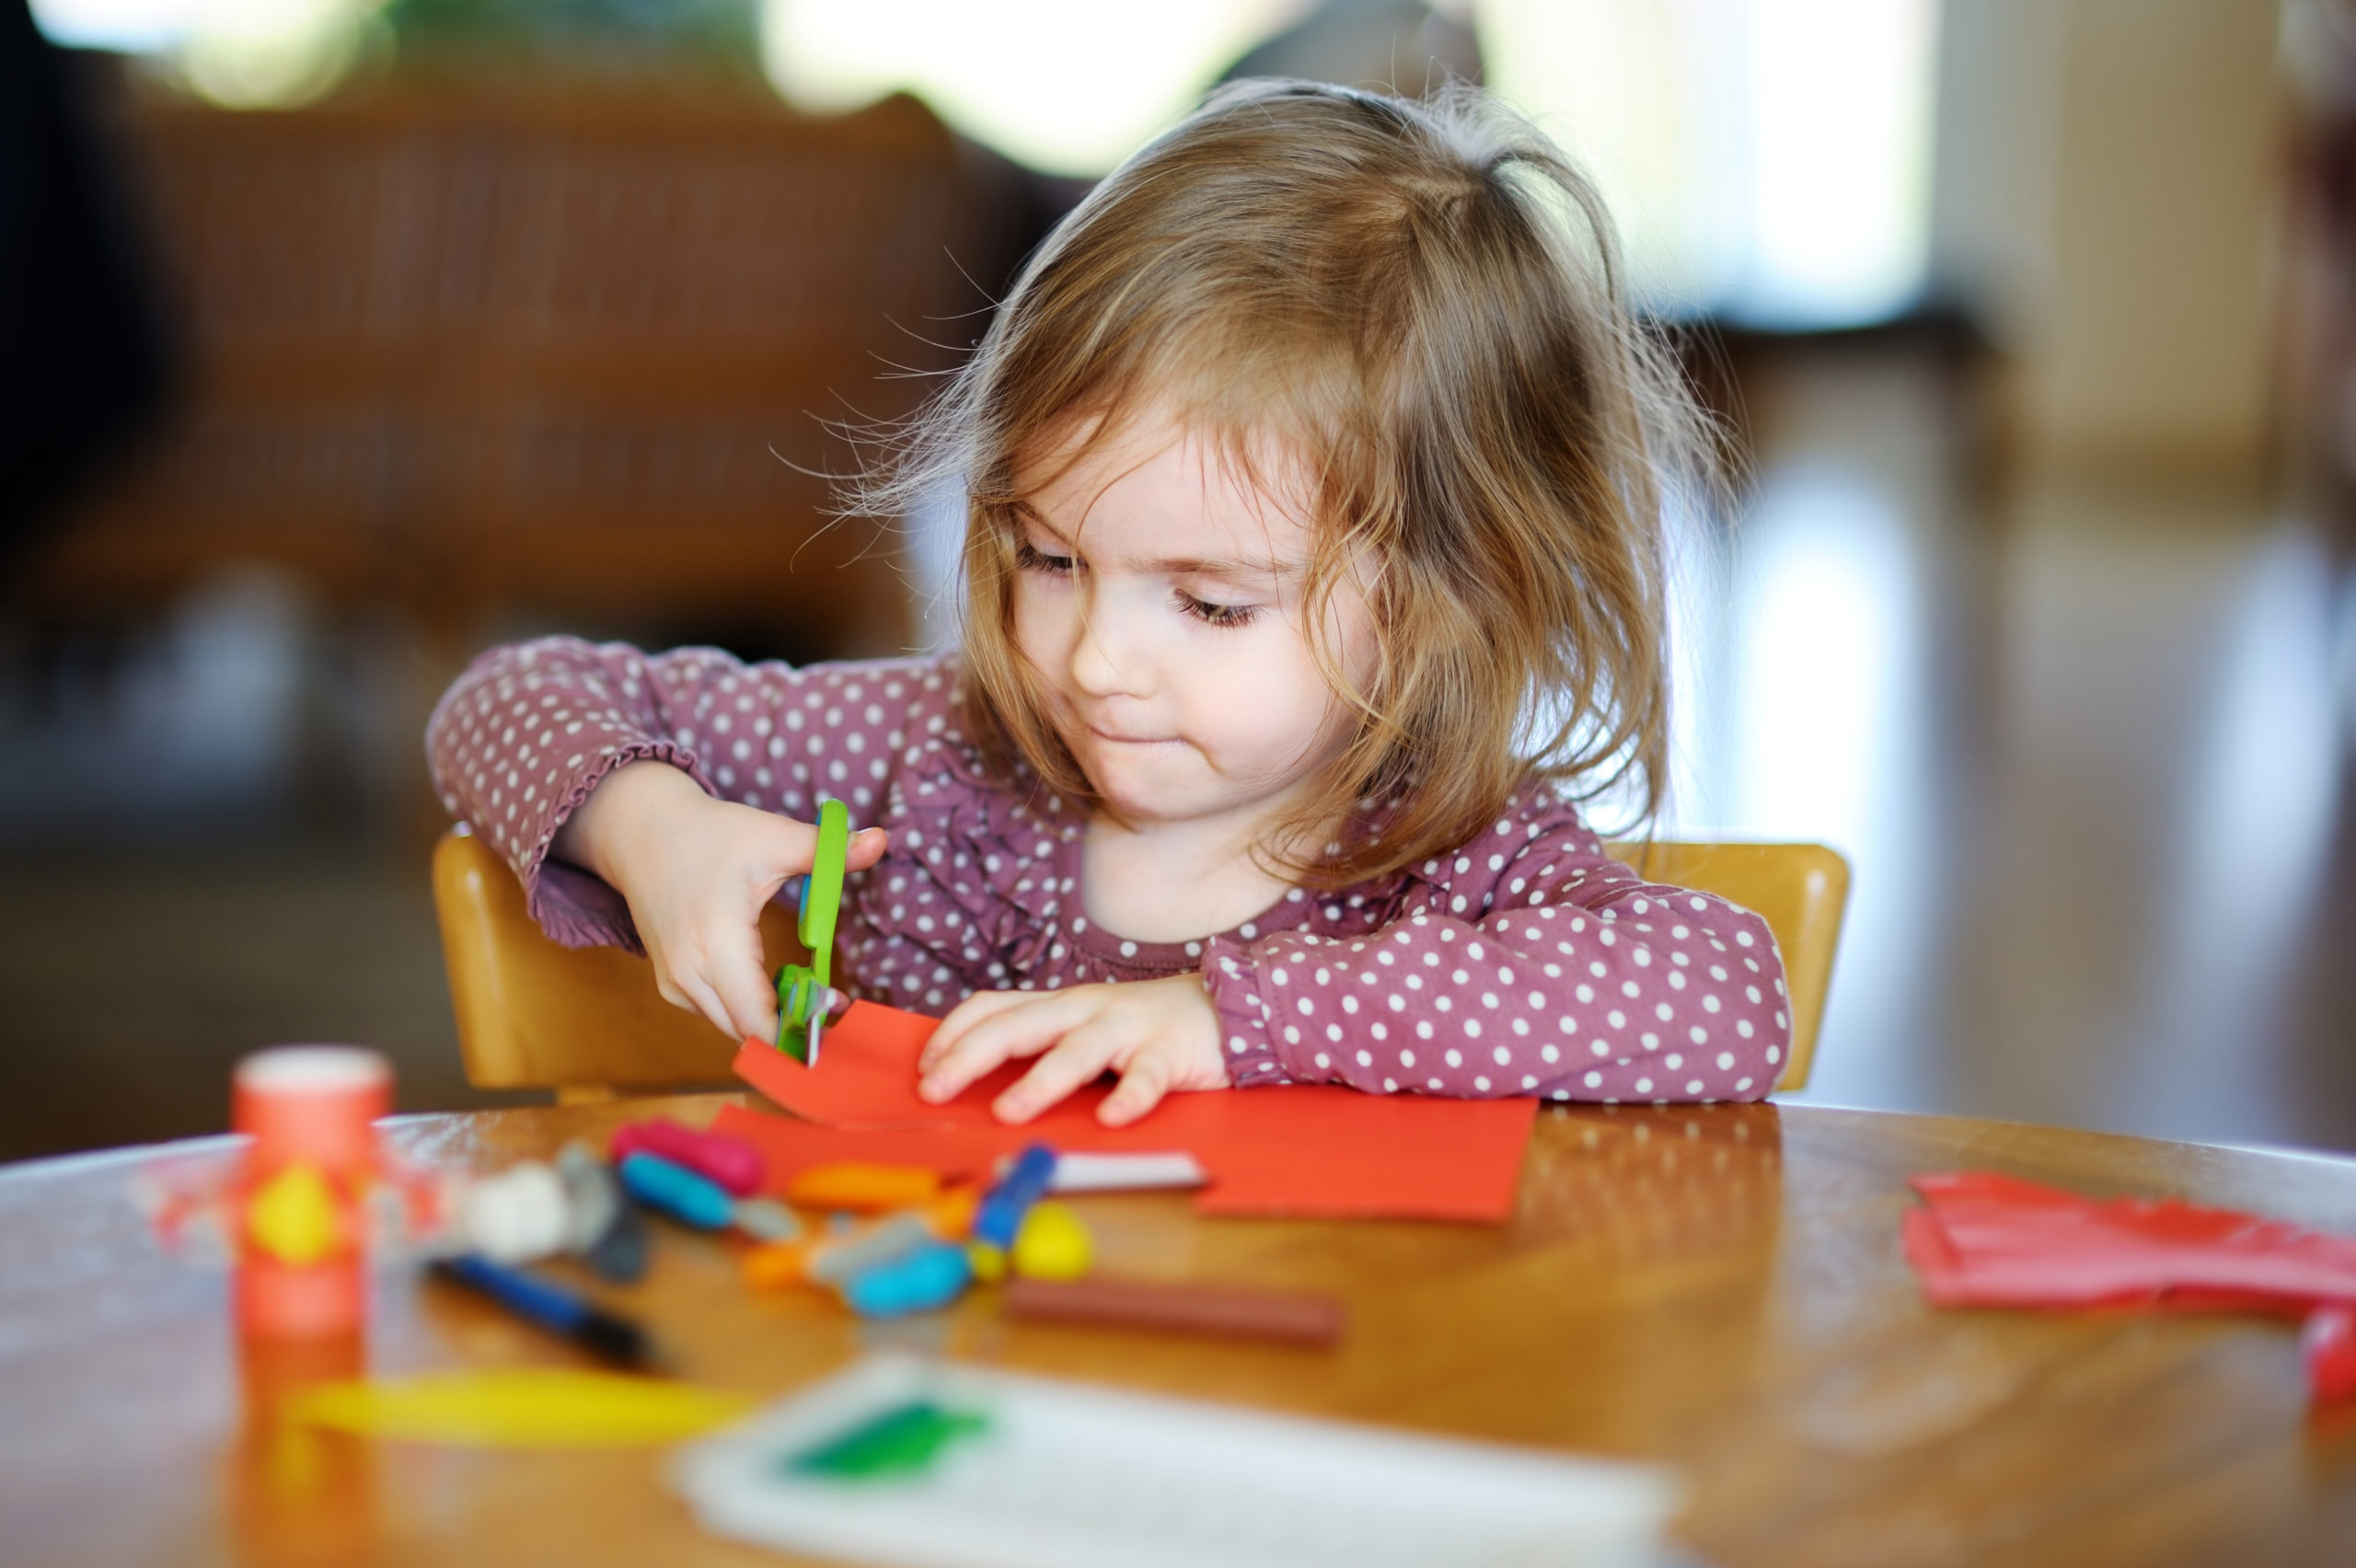 Little preschooler girl cutting paper